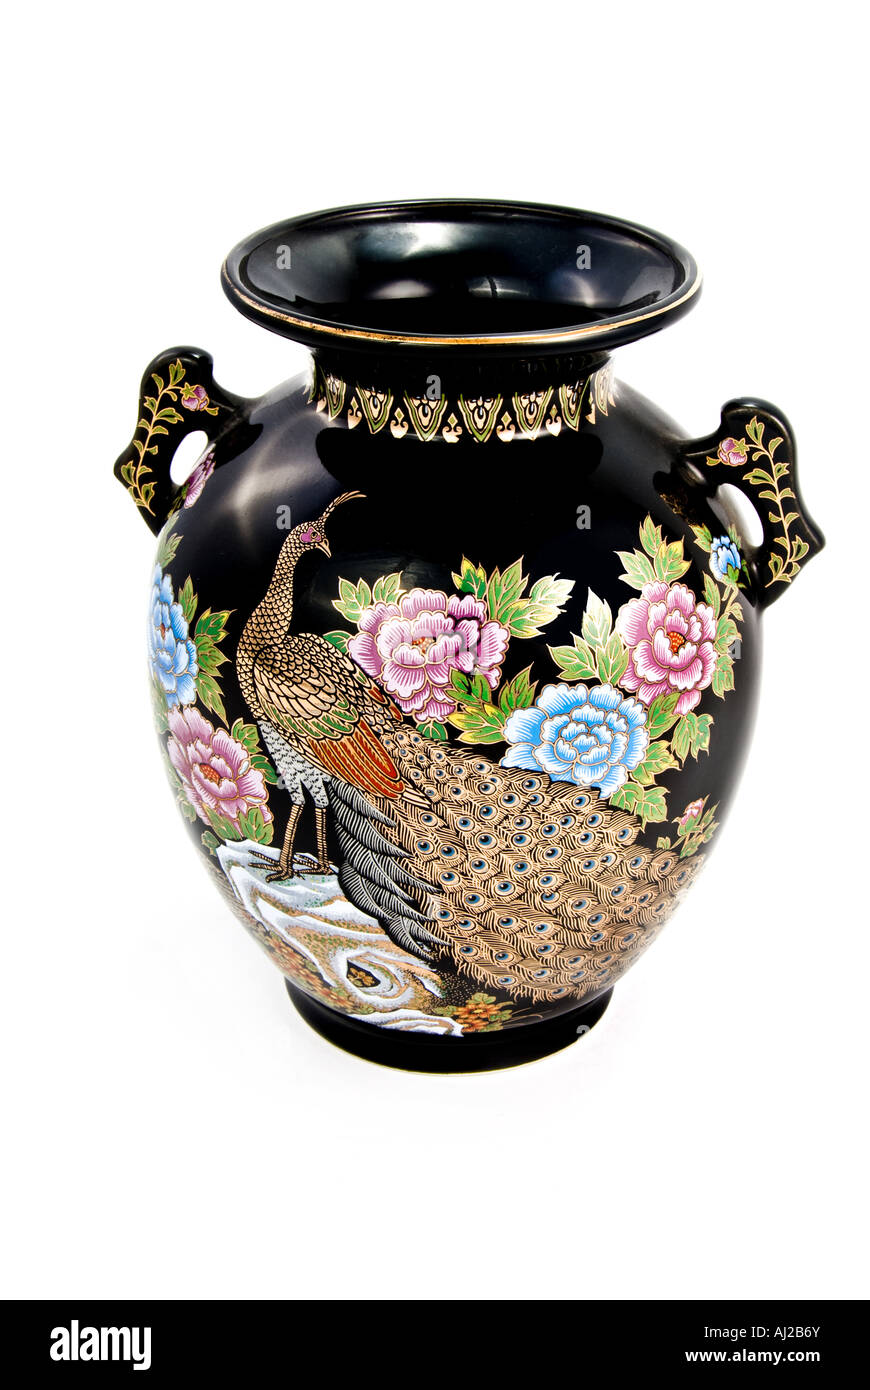 Belle asiatique vase avec peinture d'un paon et plumes avec garniture de fleurs en or et des pastels Banque D'Images